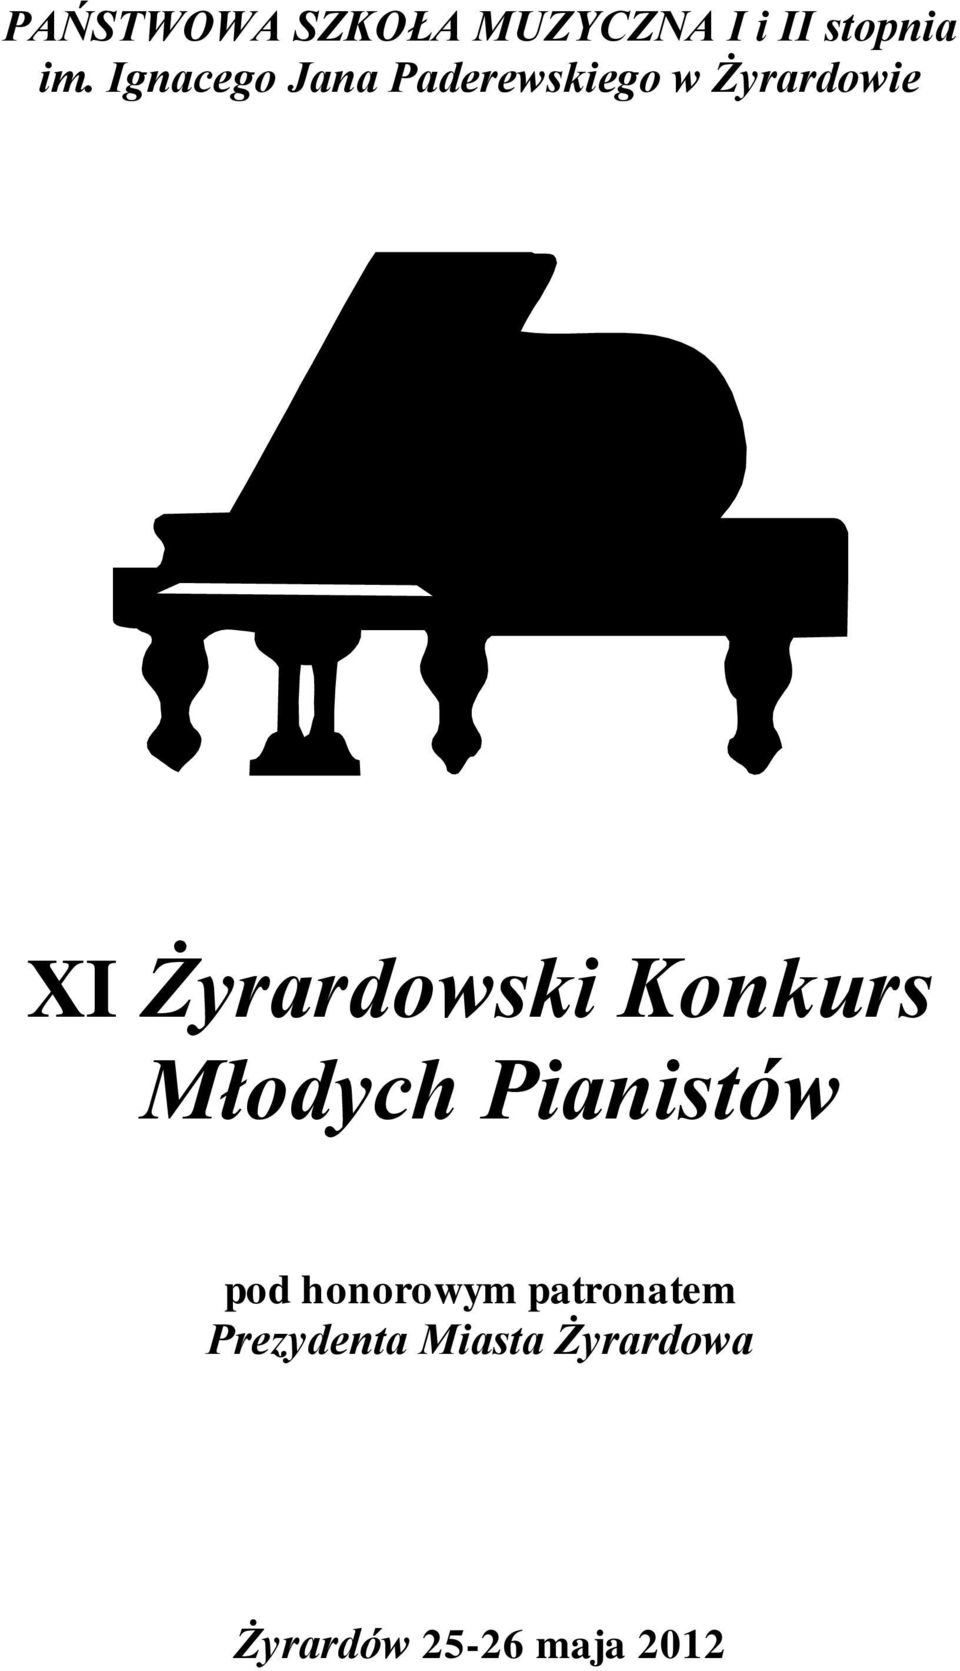 Żyrardowski Konkurs Młodych Pianistów pod